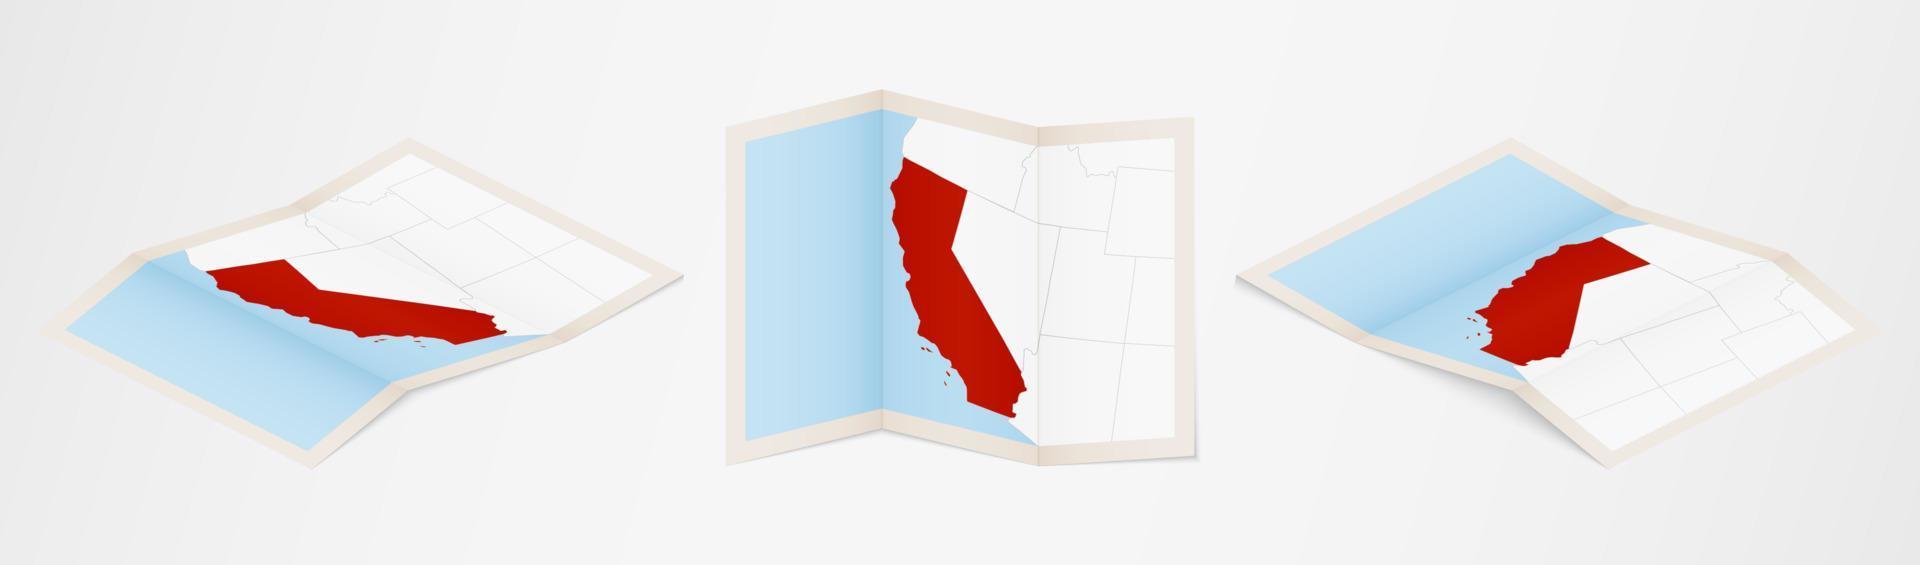 Faltkarte von Kalifornien in drei verschiedenen Versionen. vektor